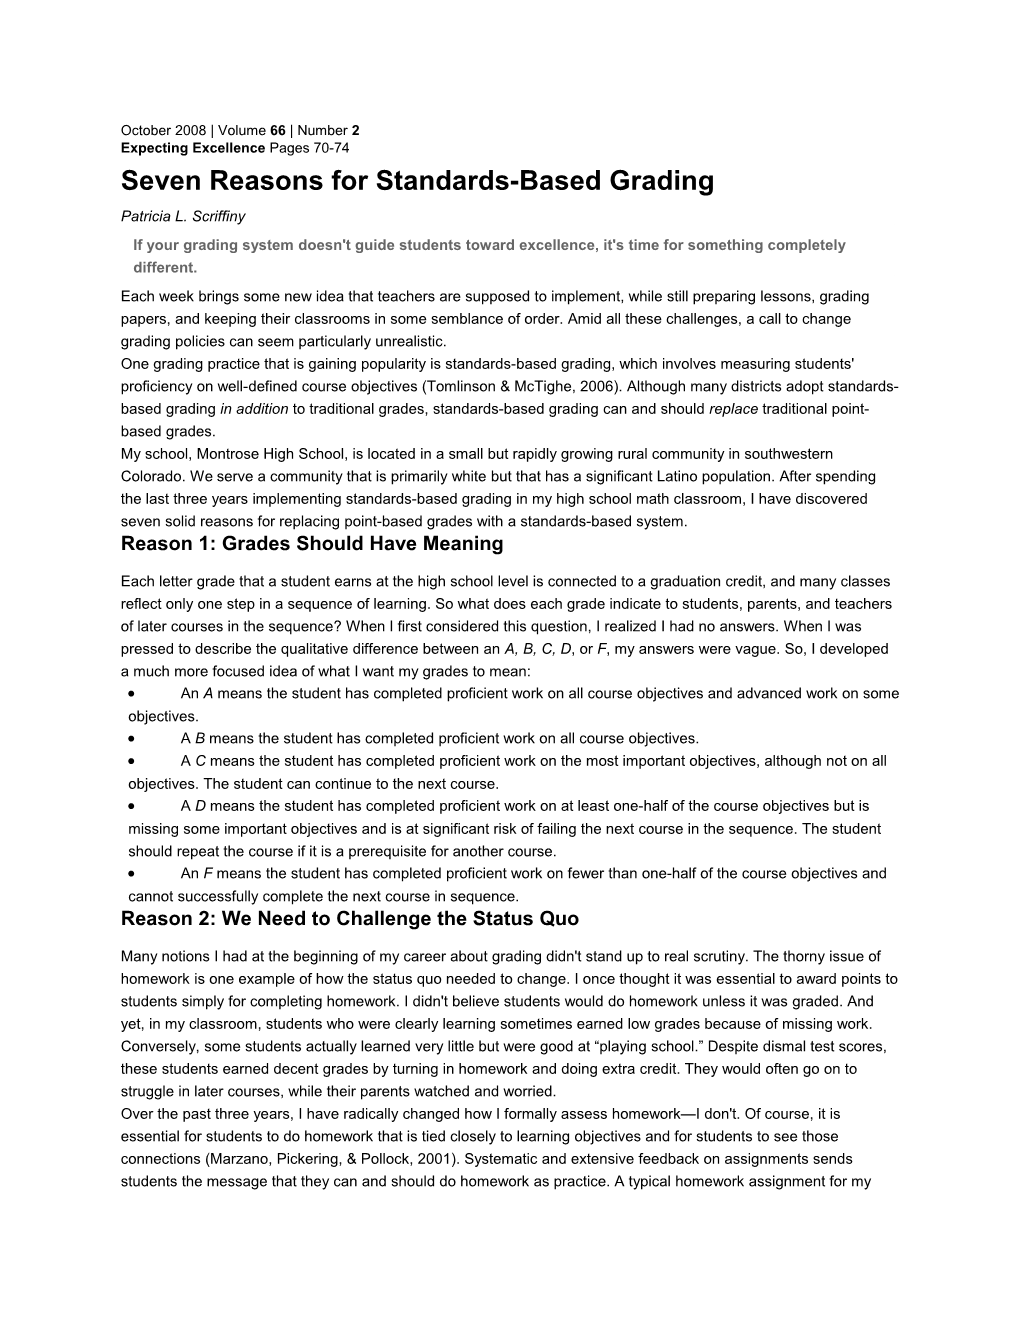 Seven Reasons for Standards-Based Grading